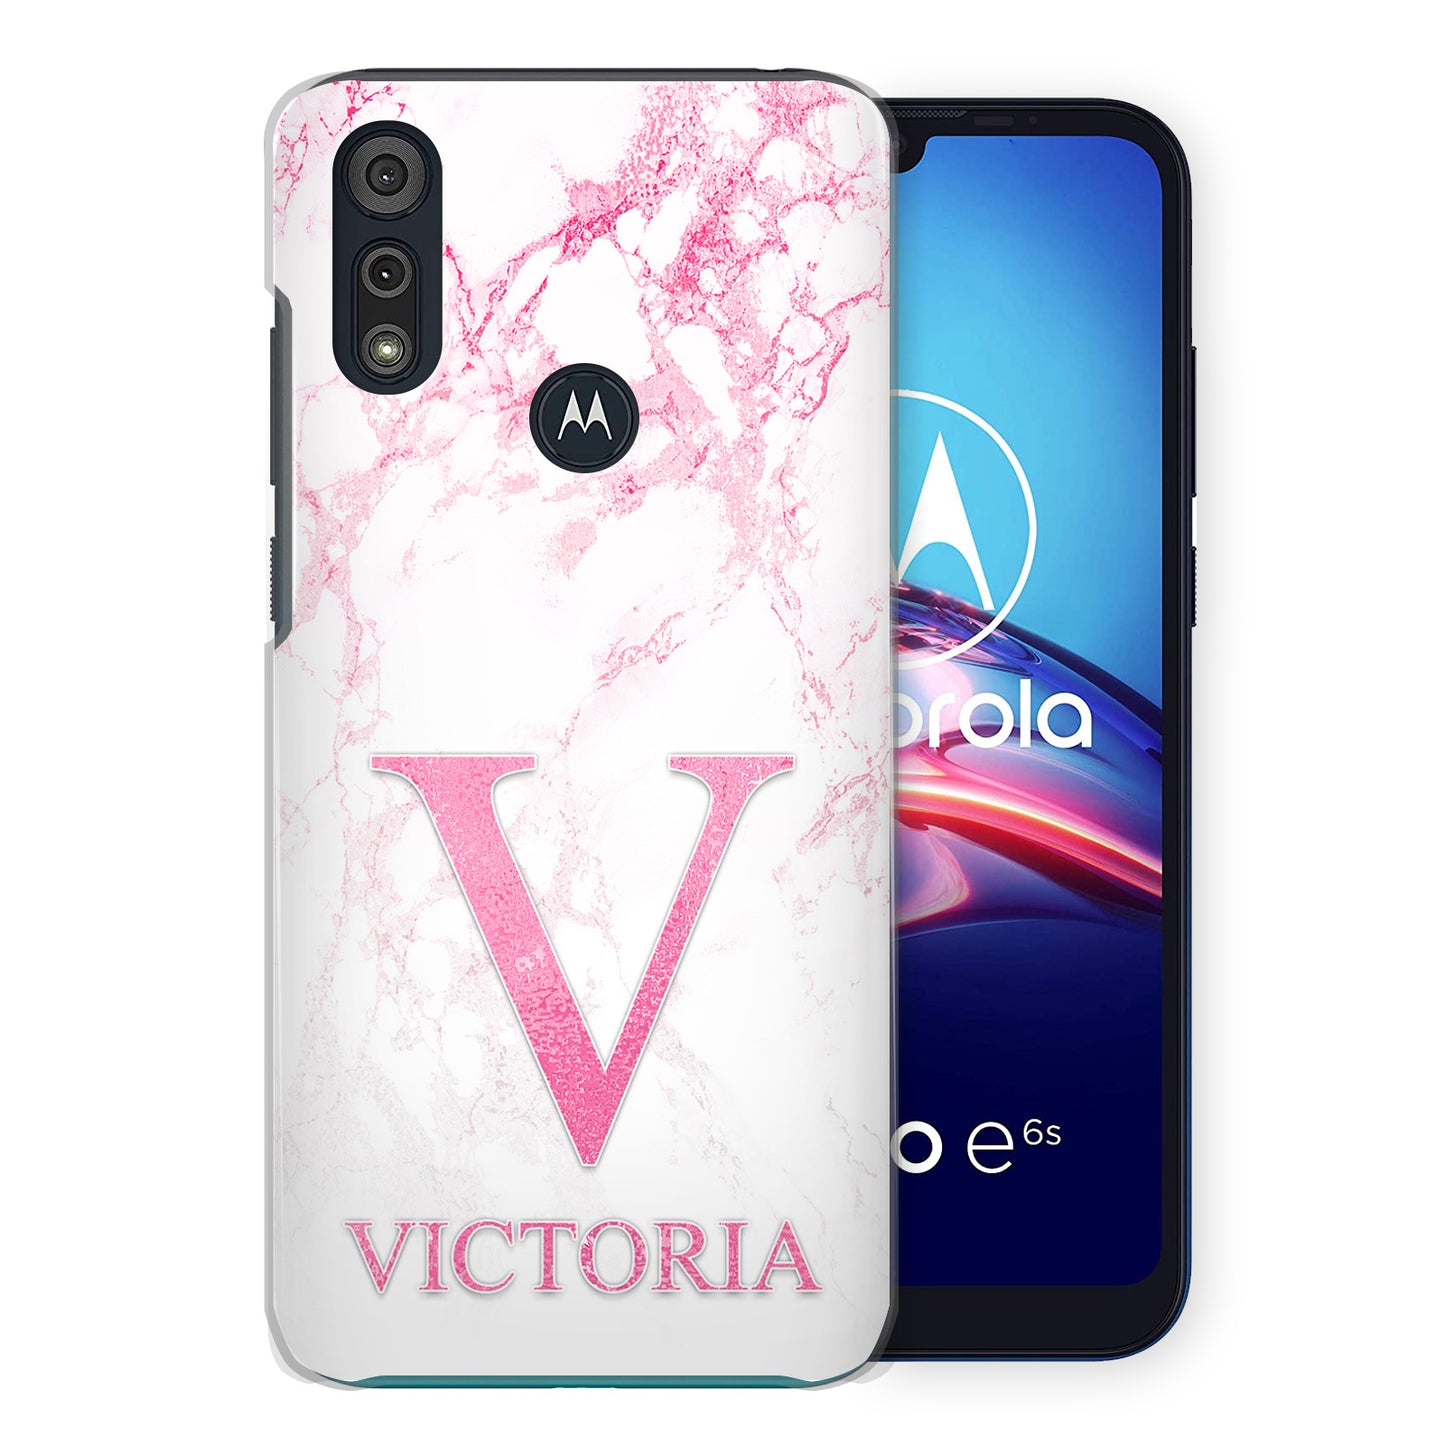 Personalised Motorola Hard Case - Pink Marble & Pink Initial/Name